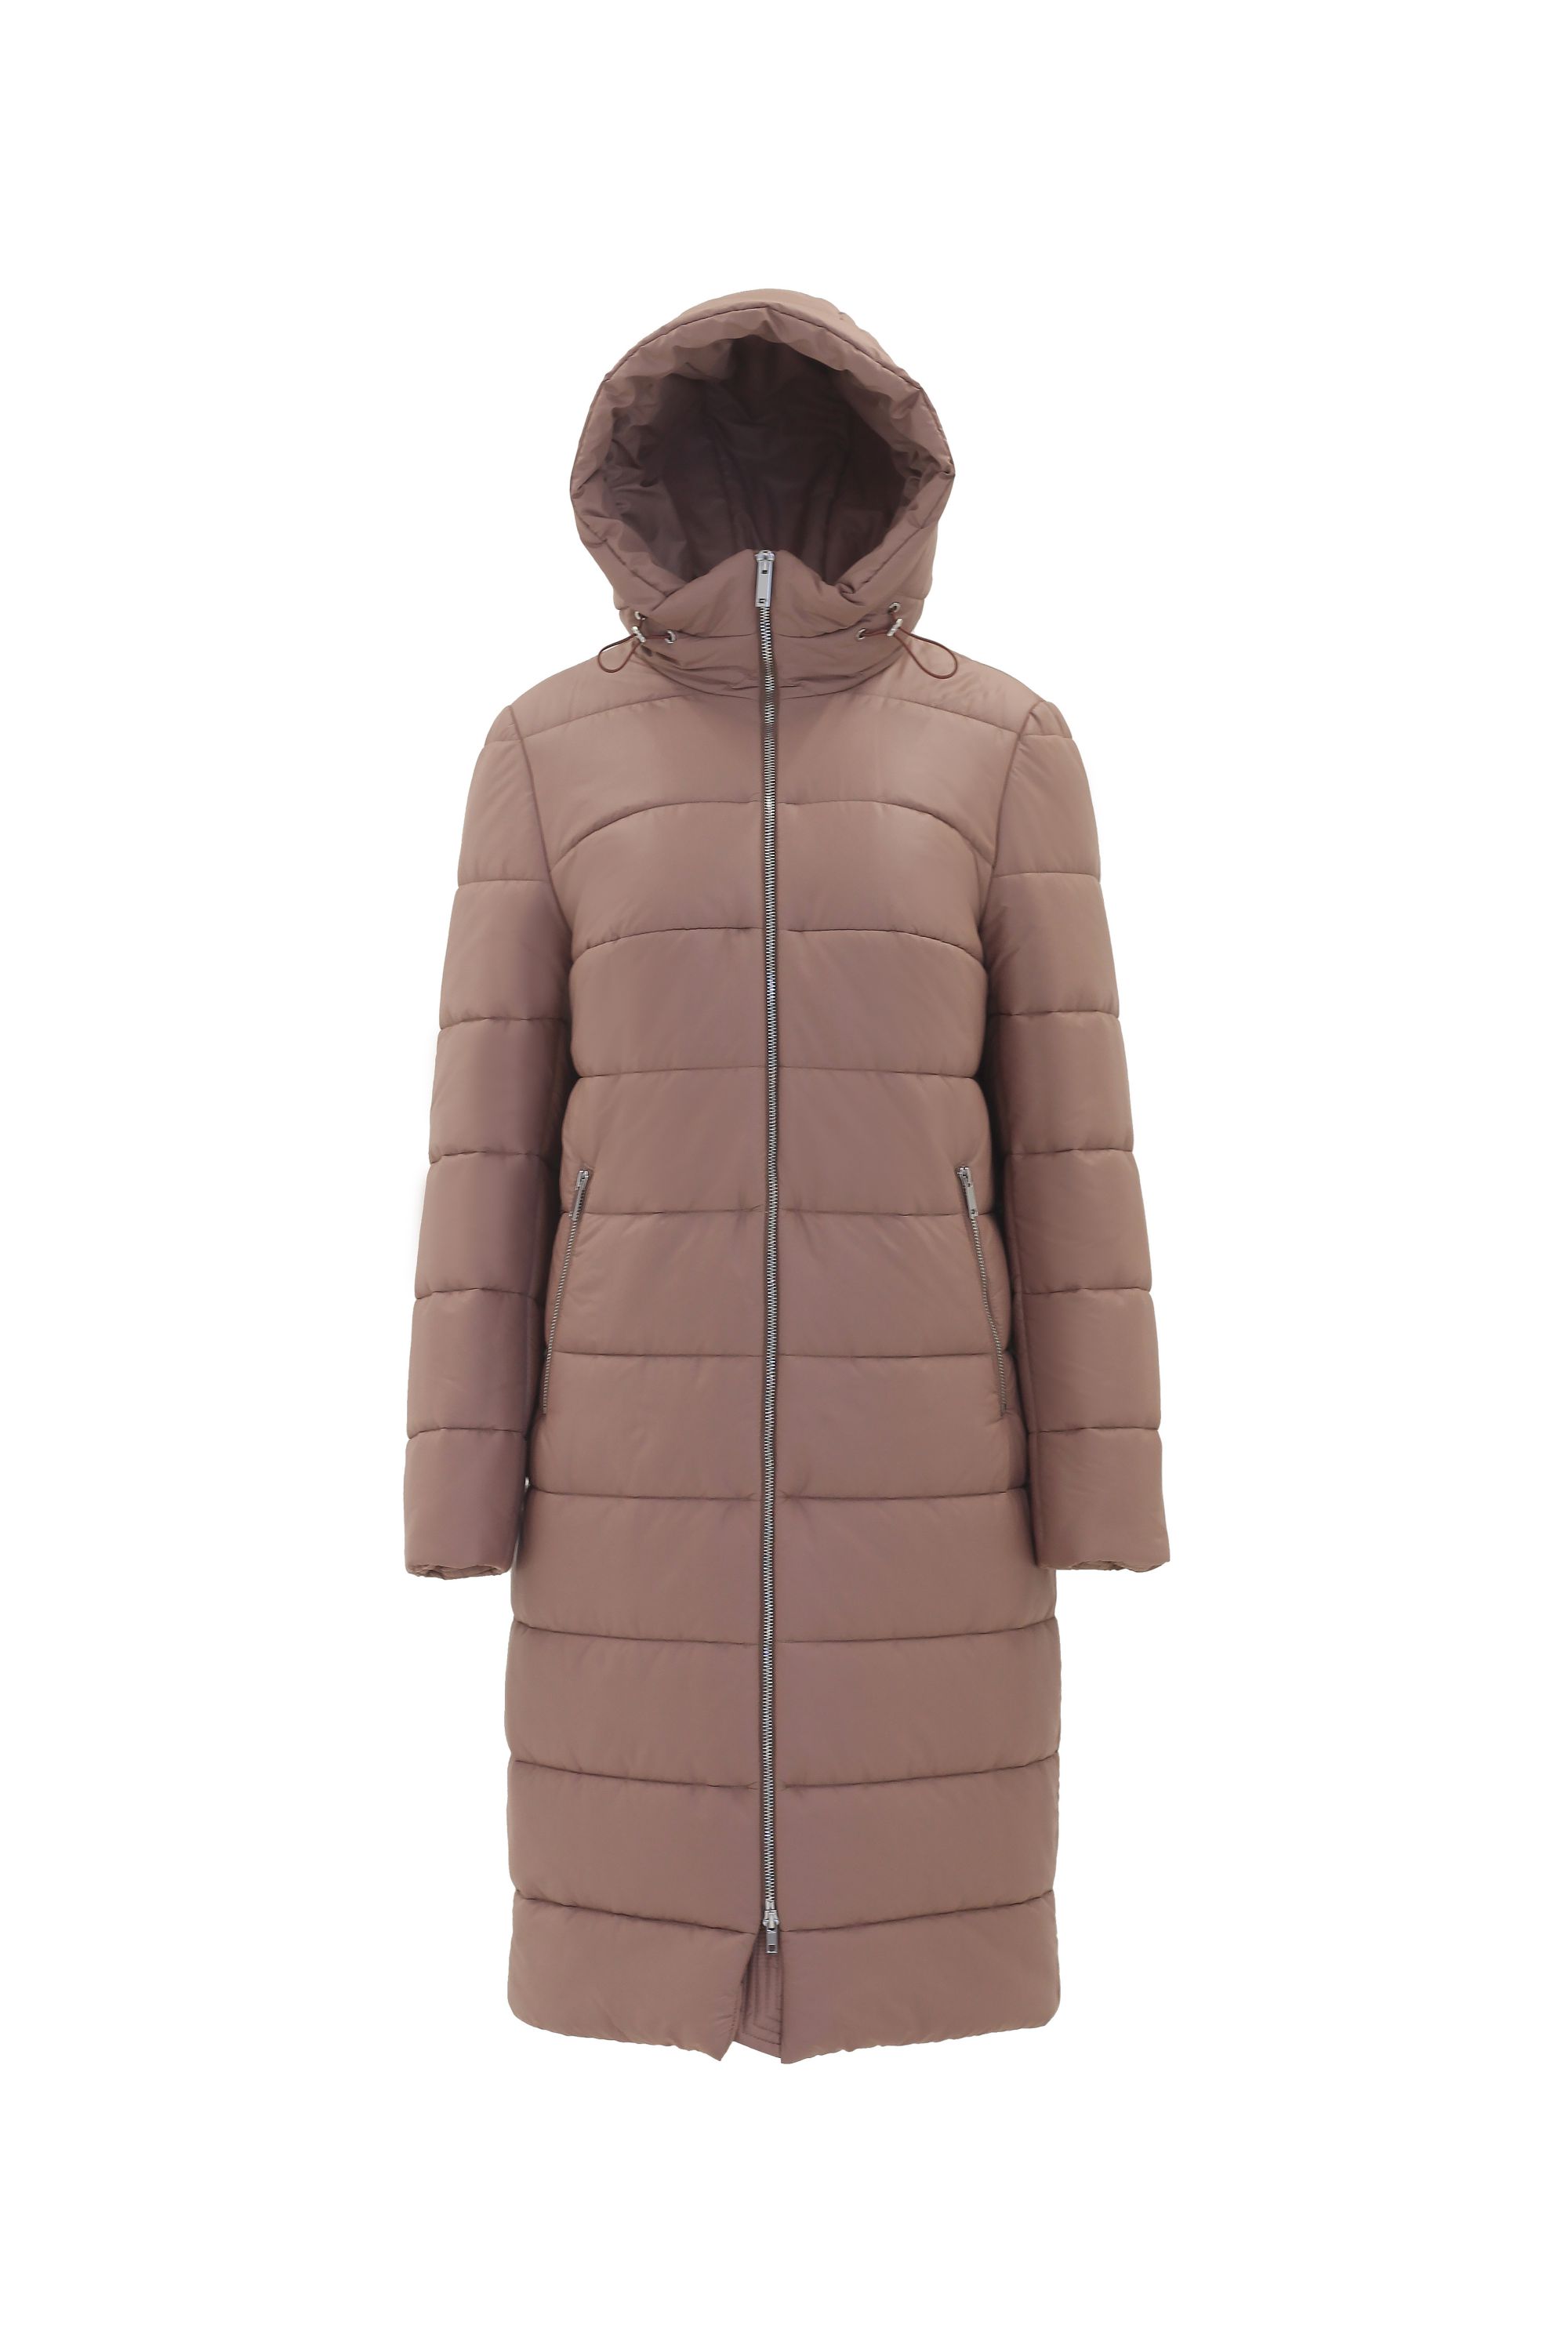 Пальто женское плащевое утепленное 5-12338-1. Фото 1.